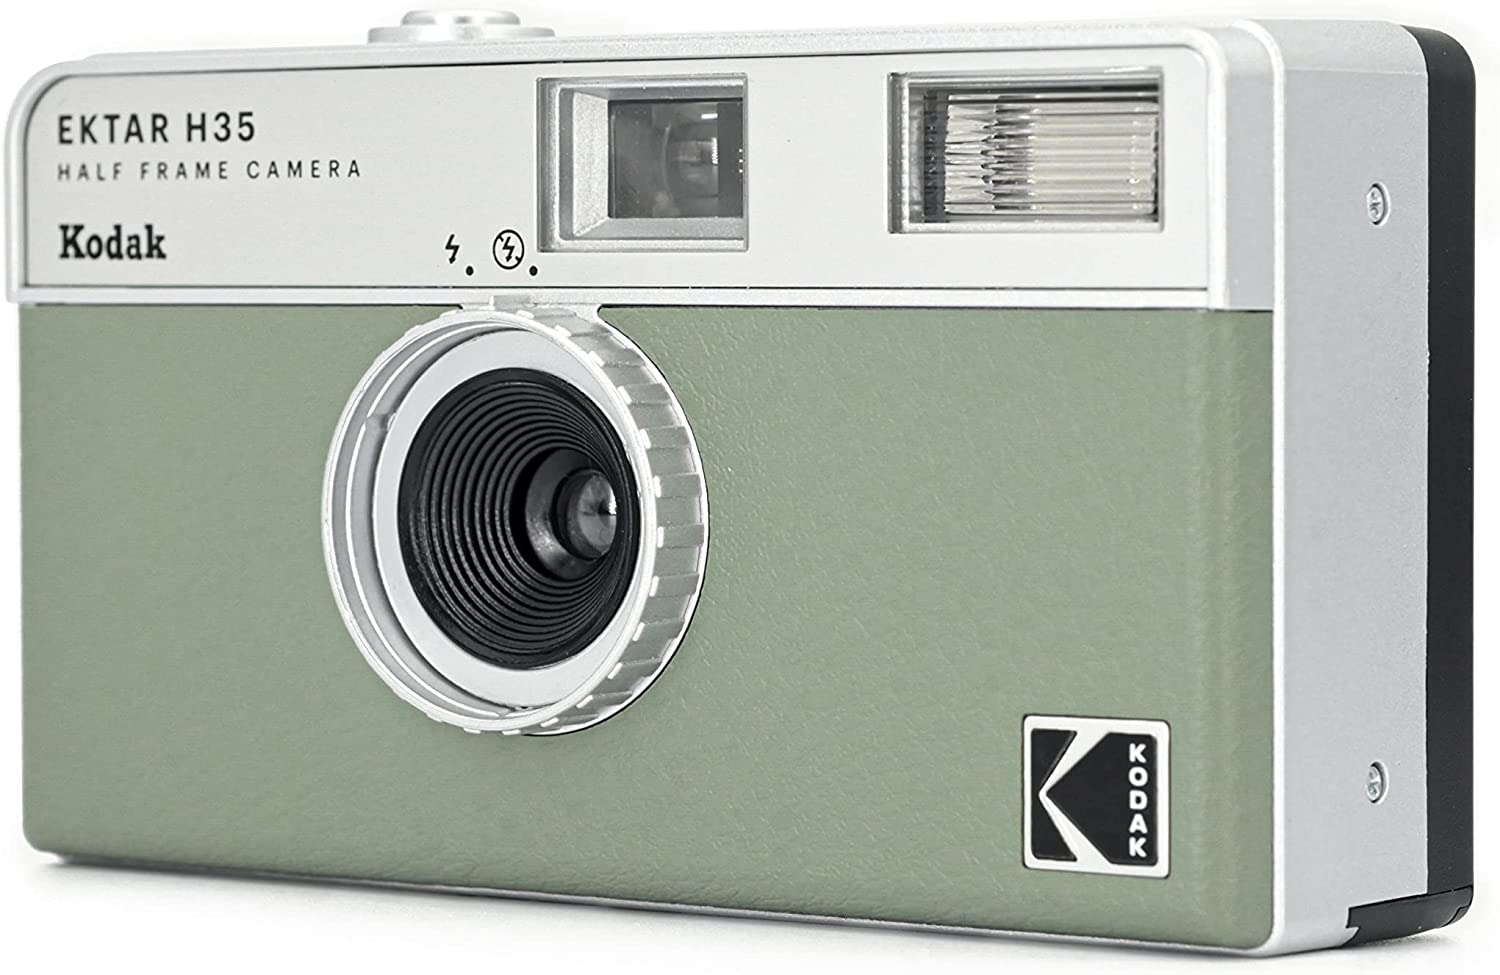  film camera Kodakko Duck half camera retro easy light weight 35mm camera EKTAR H35 sage color film alkali battery set 